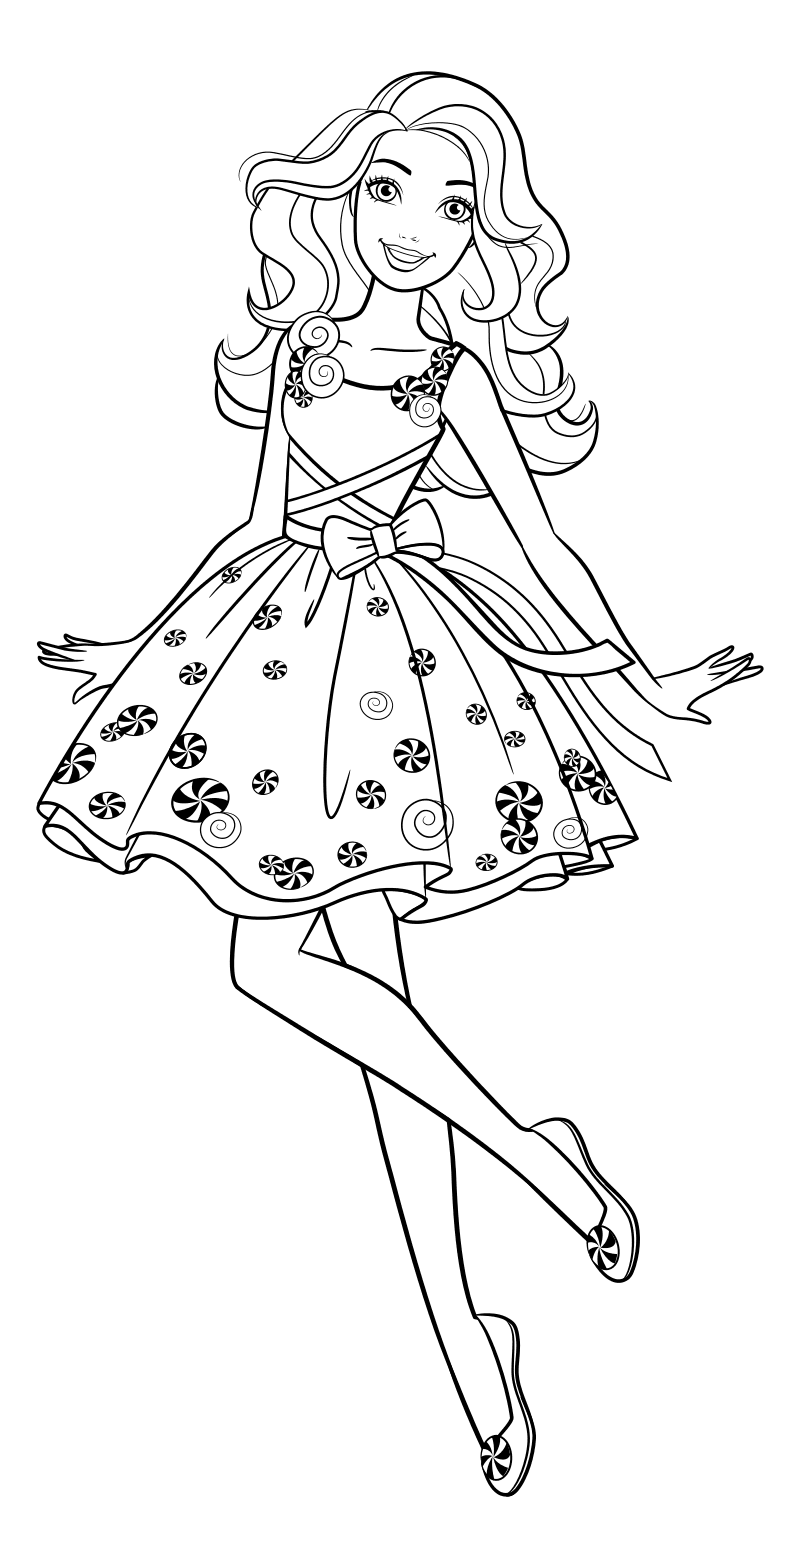 Раскраска - Барби - Барби в платье с леденцами